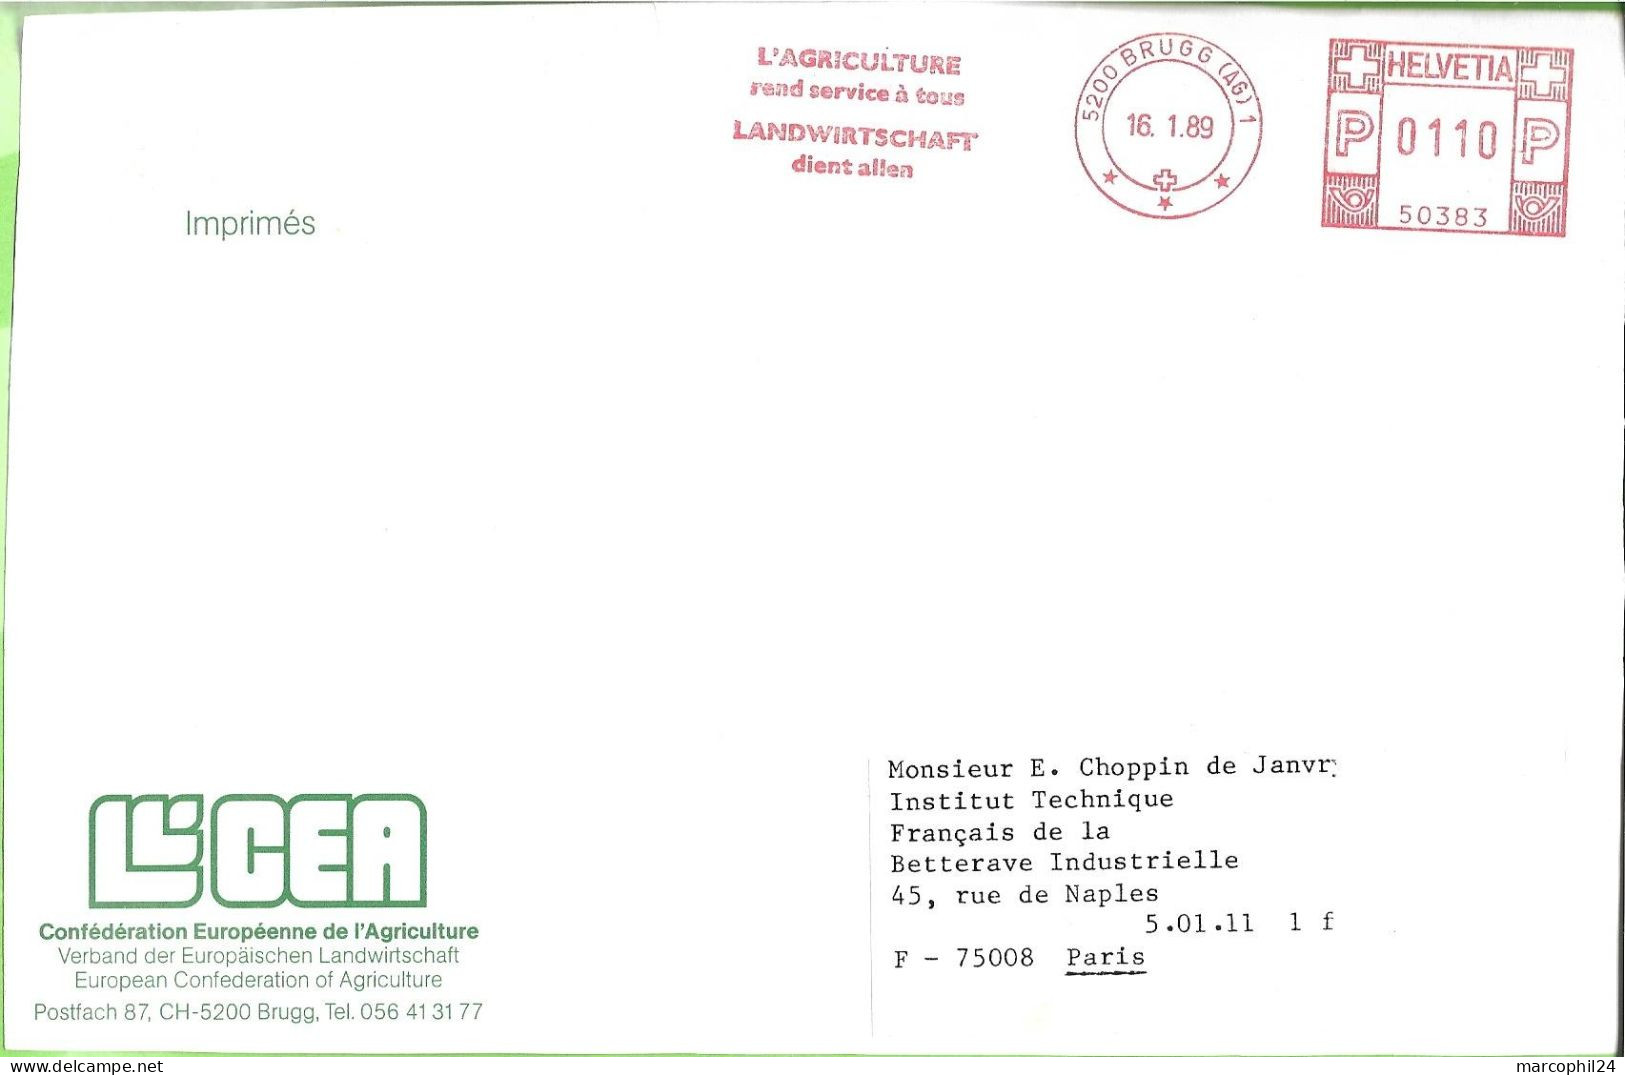 BRUGG 1989 =FLAMME ROUGE EMA 'L' AGRICULTURE Rend Service à Tous' - HELVETIA - Confédération Européenne De L'Agriculture - Frankiermaschinen (FraMA)